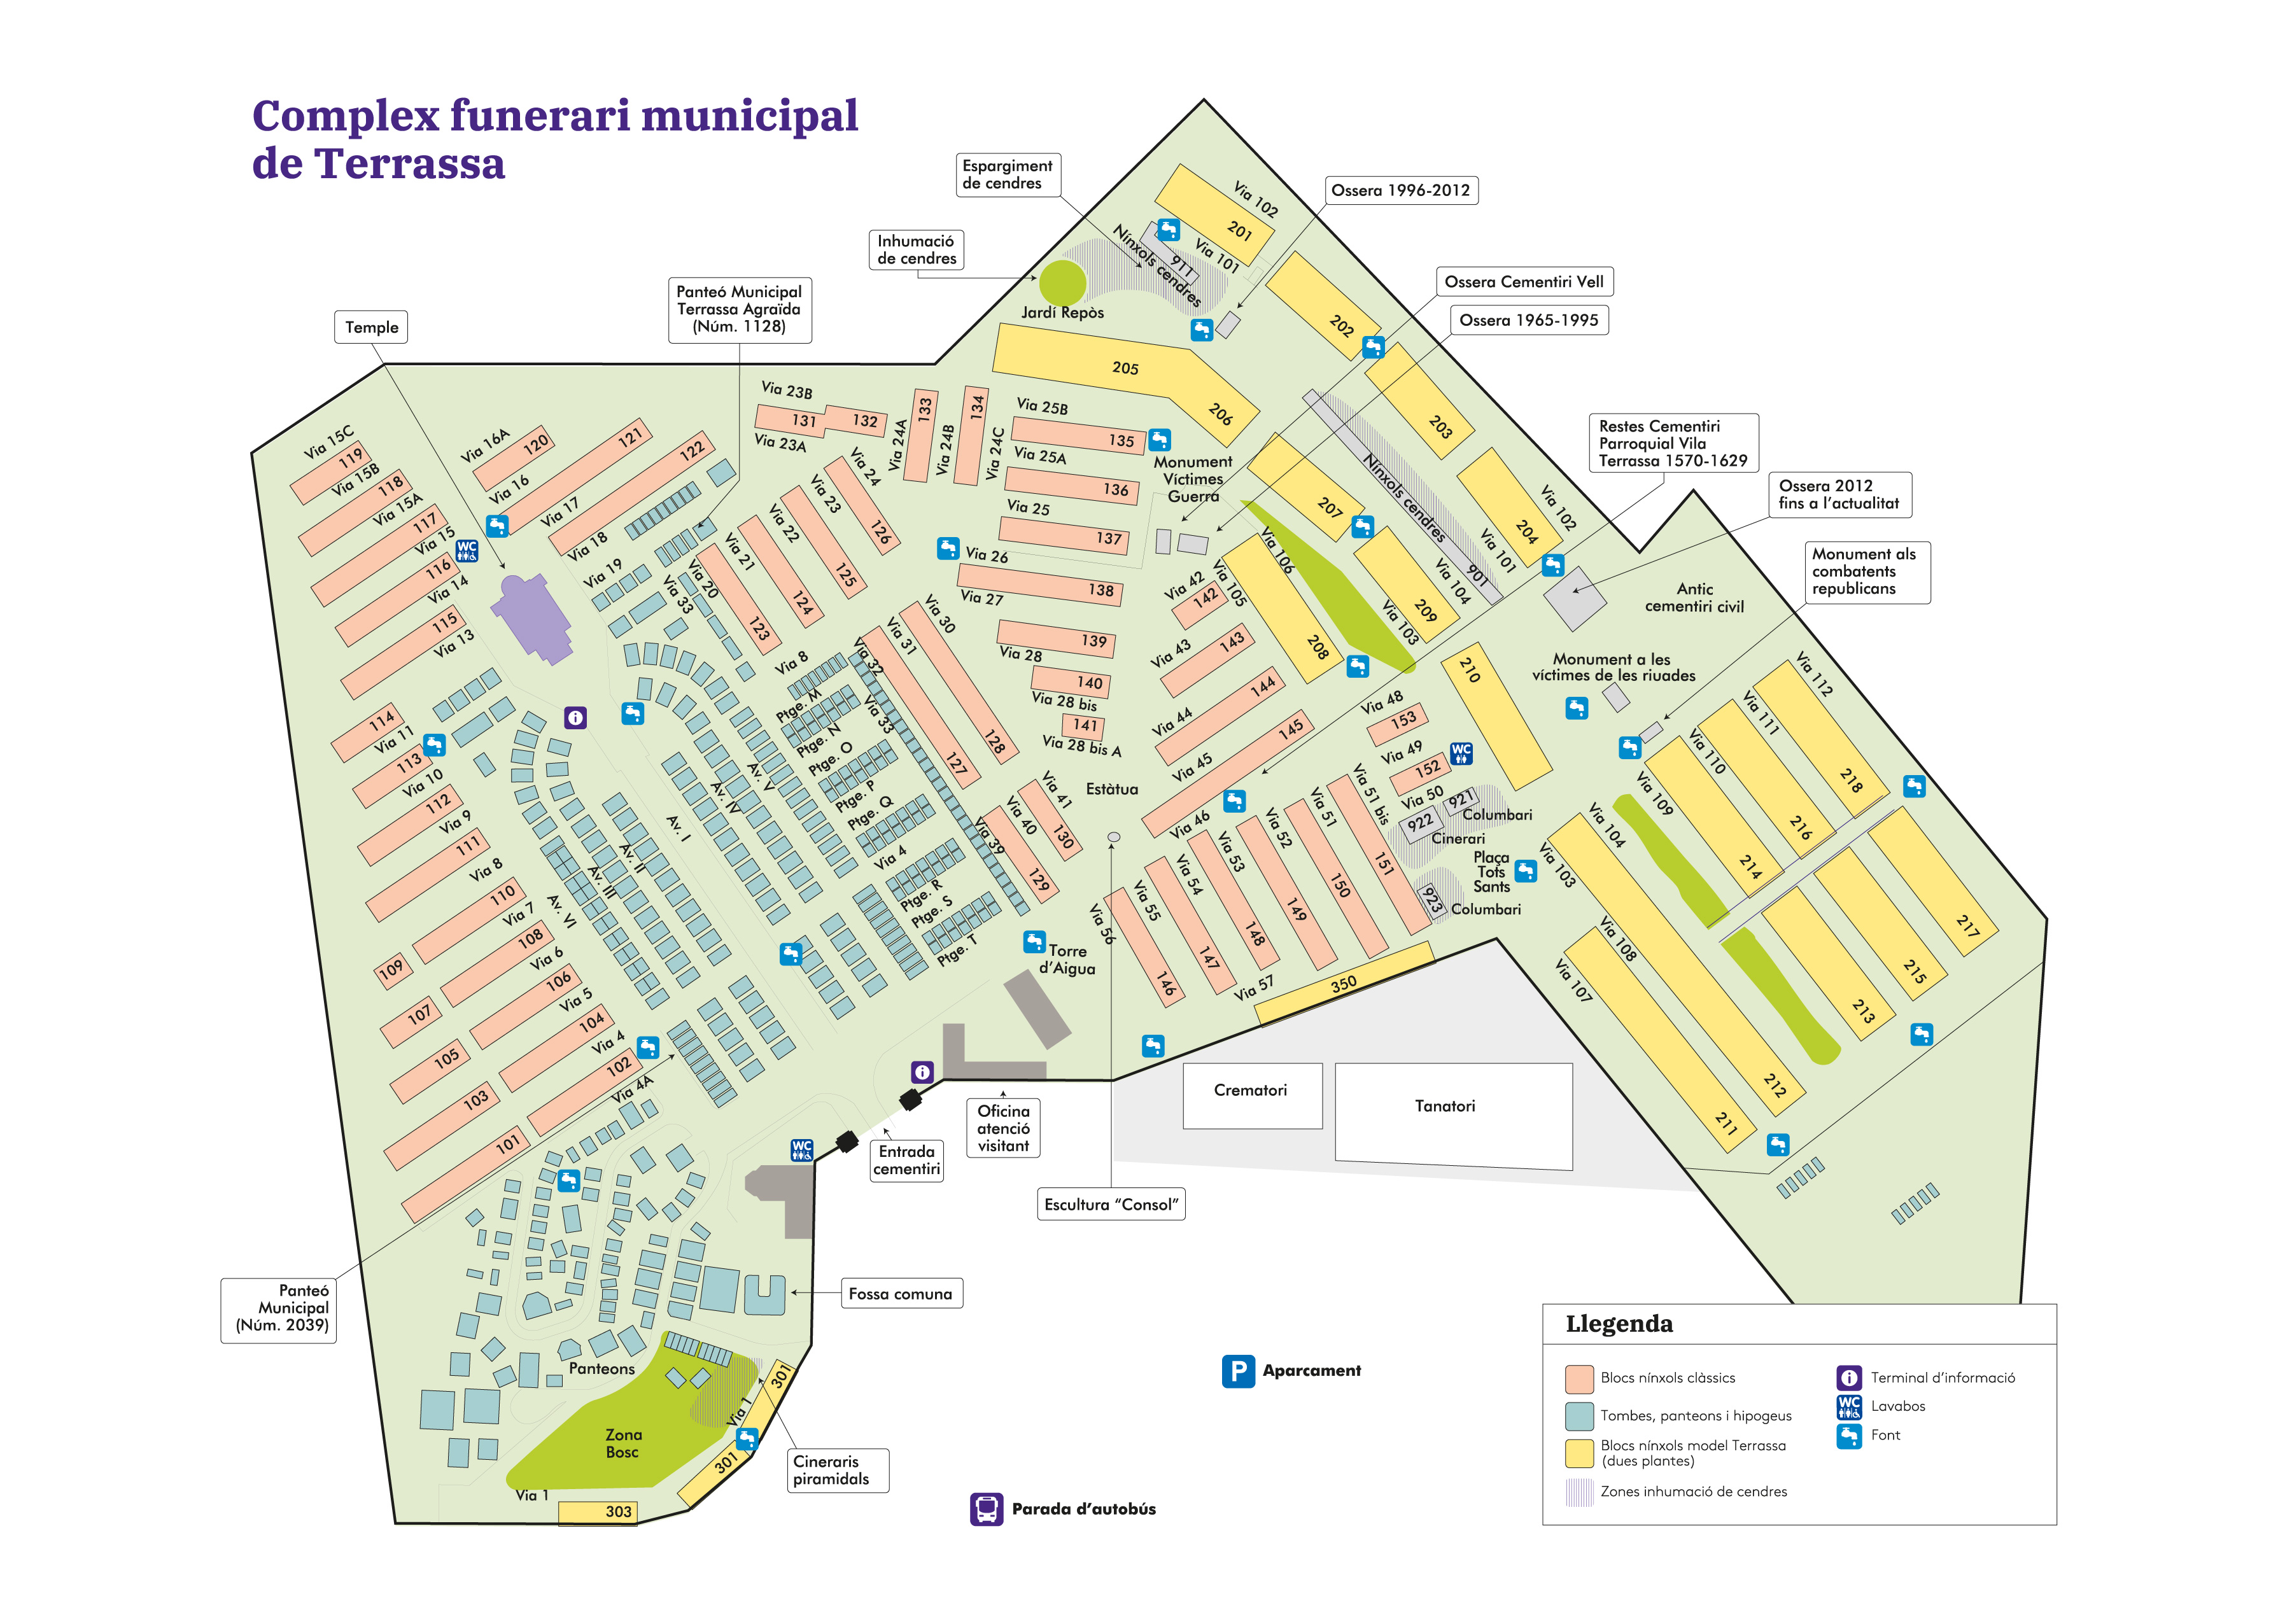 Plano del complejo funerario municipal de Terrassa